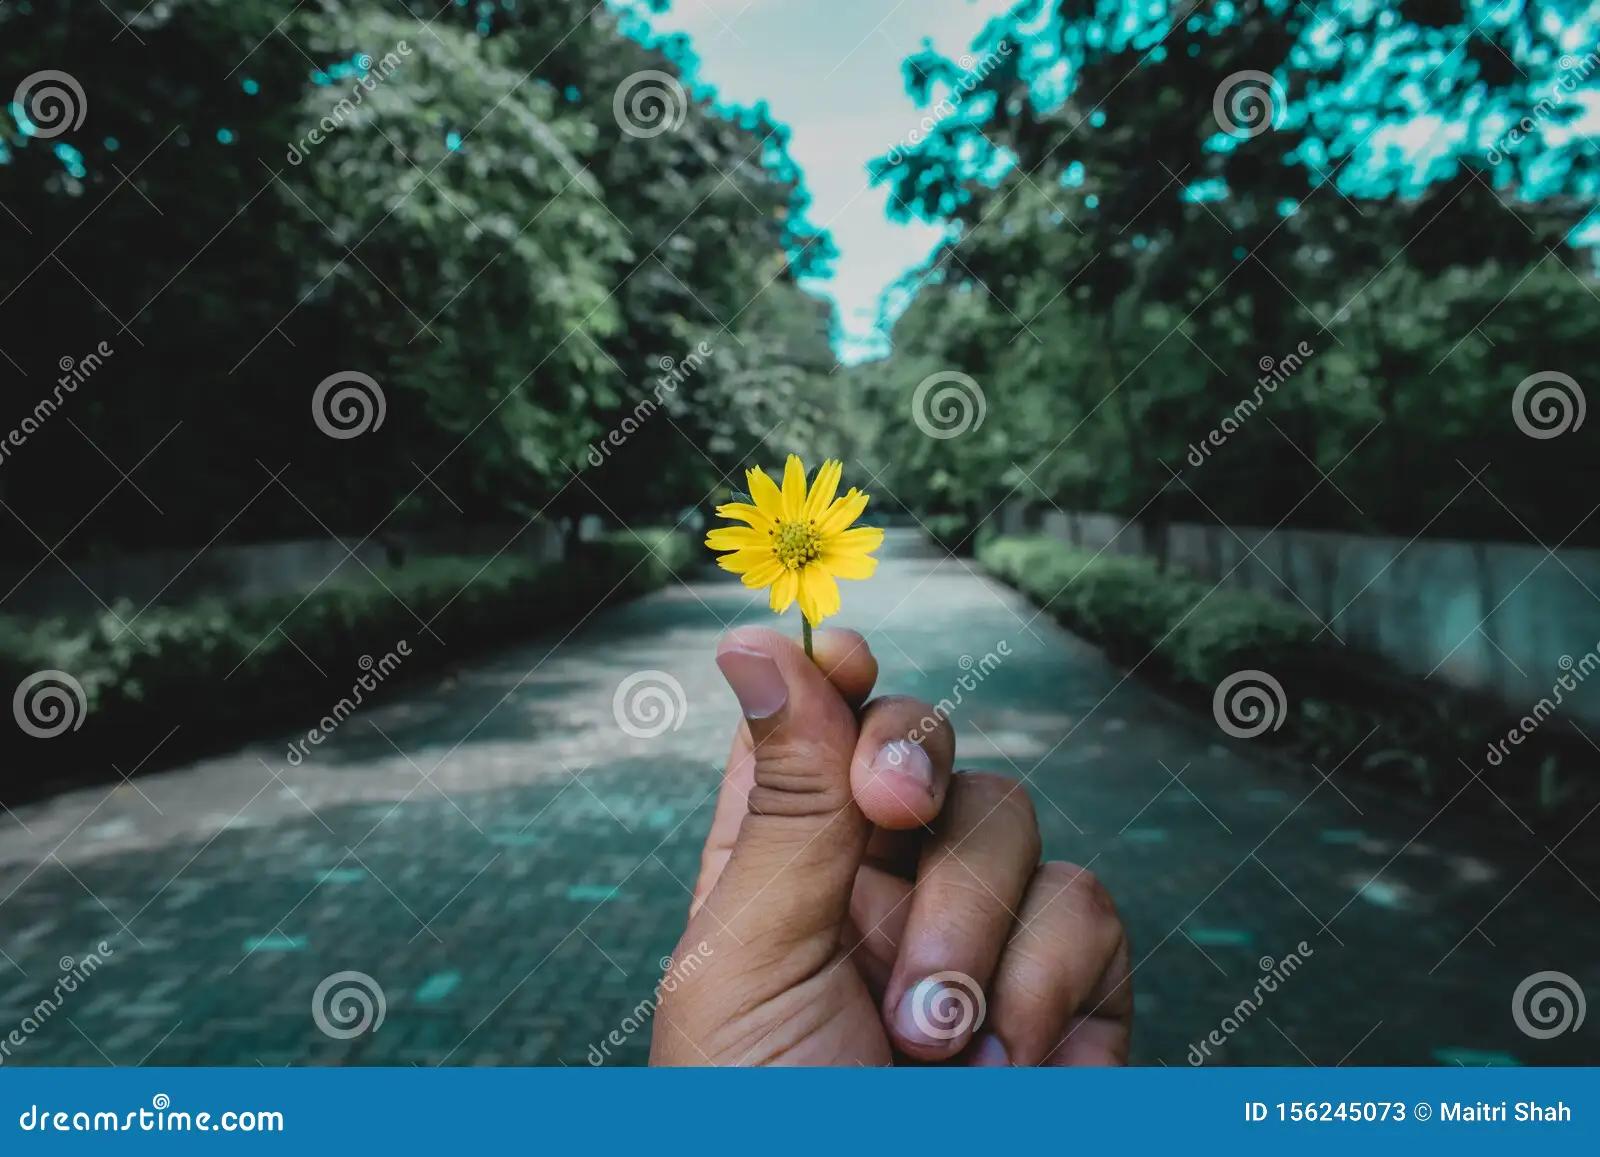 persona agarrando una flor - Qué flor simboliza el amor belleza y sensualidad